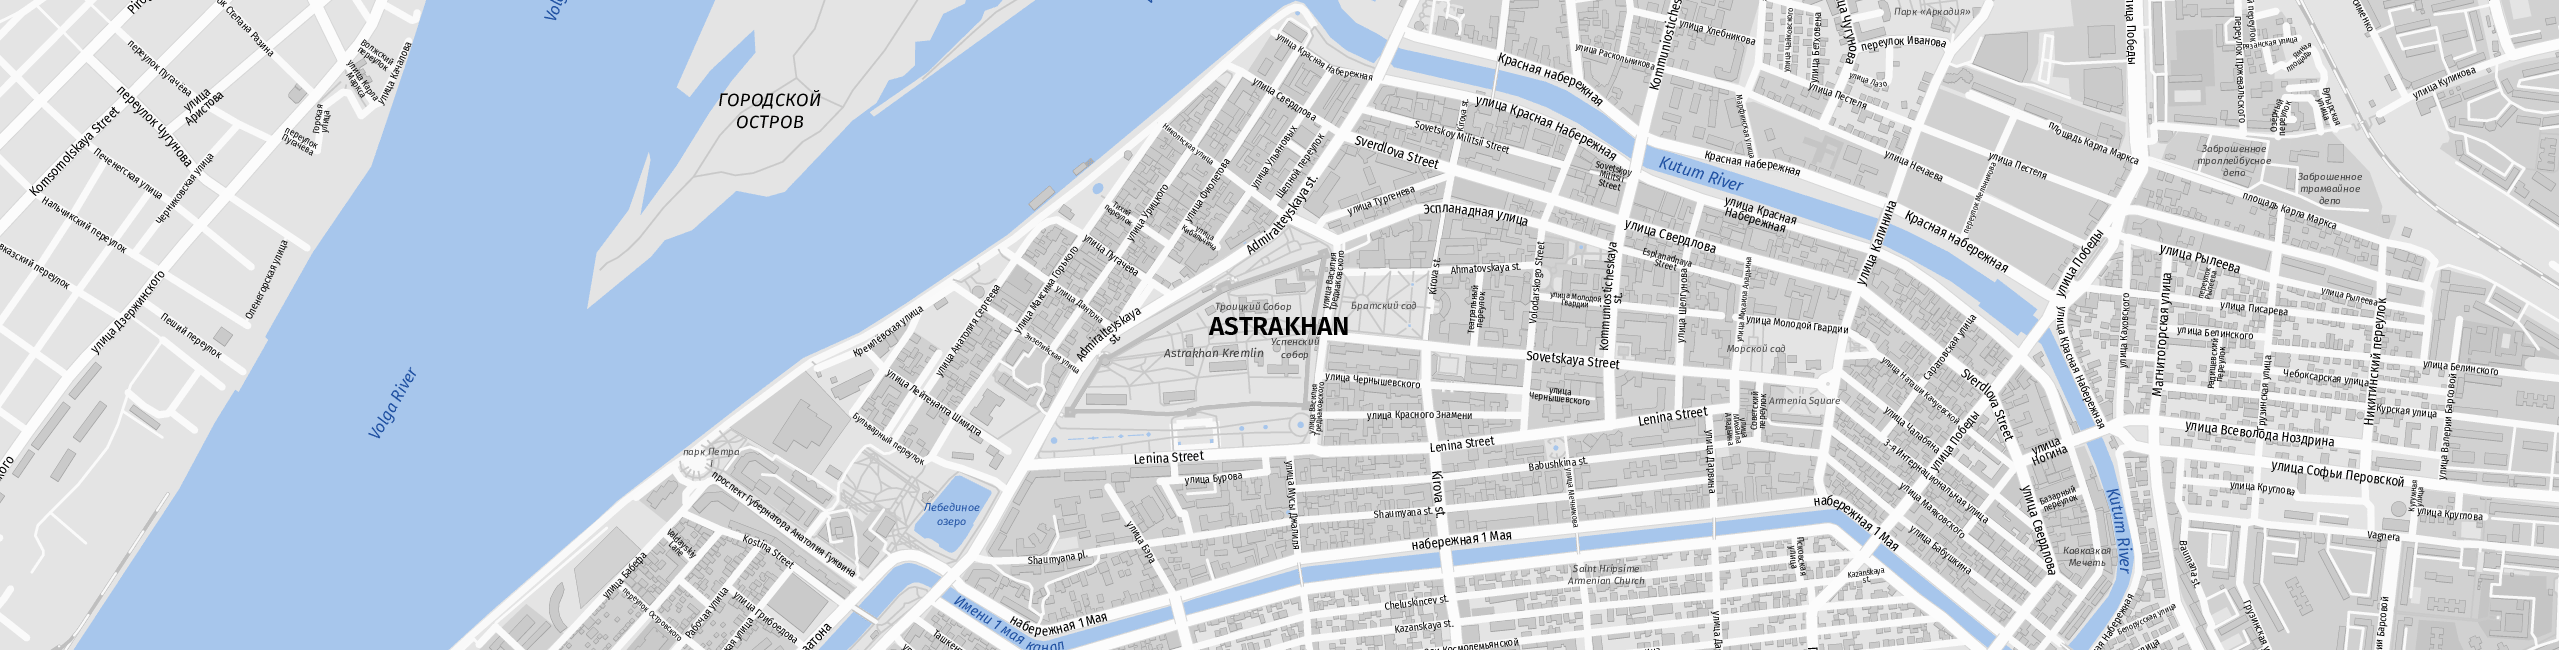 Stadtplan Astrachan zum Downloaden.